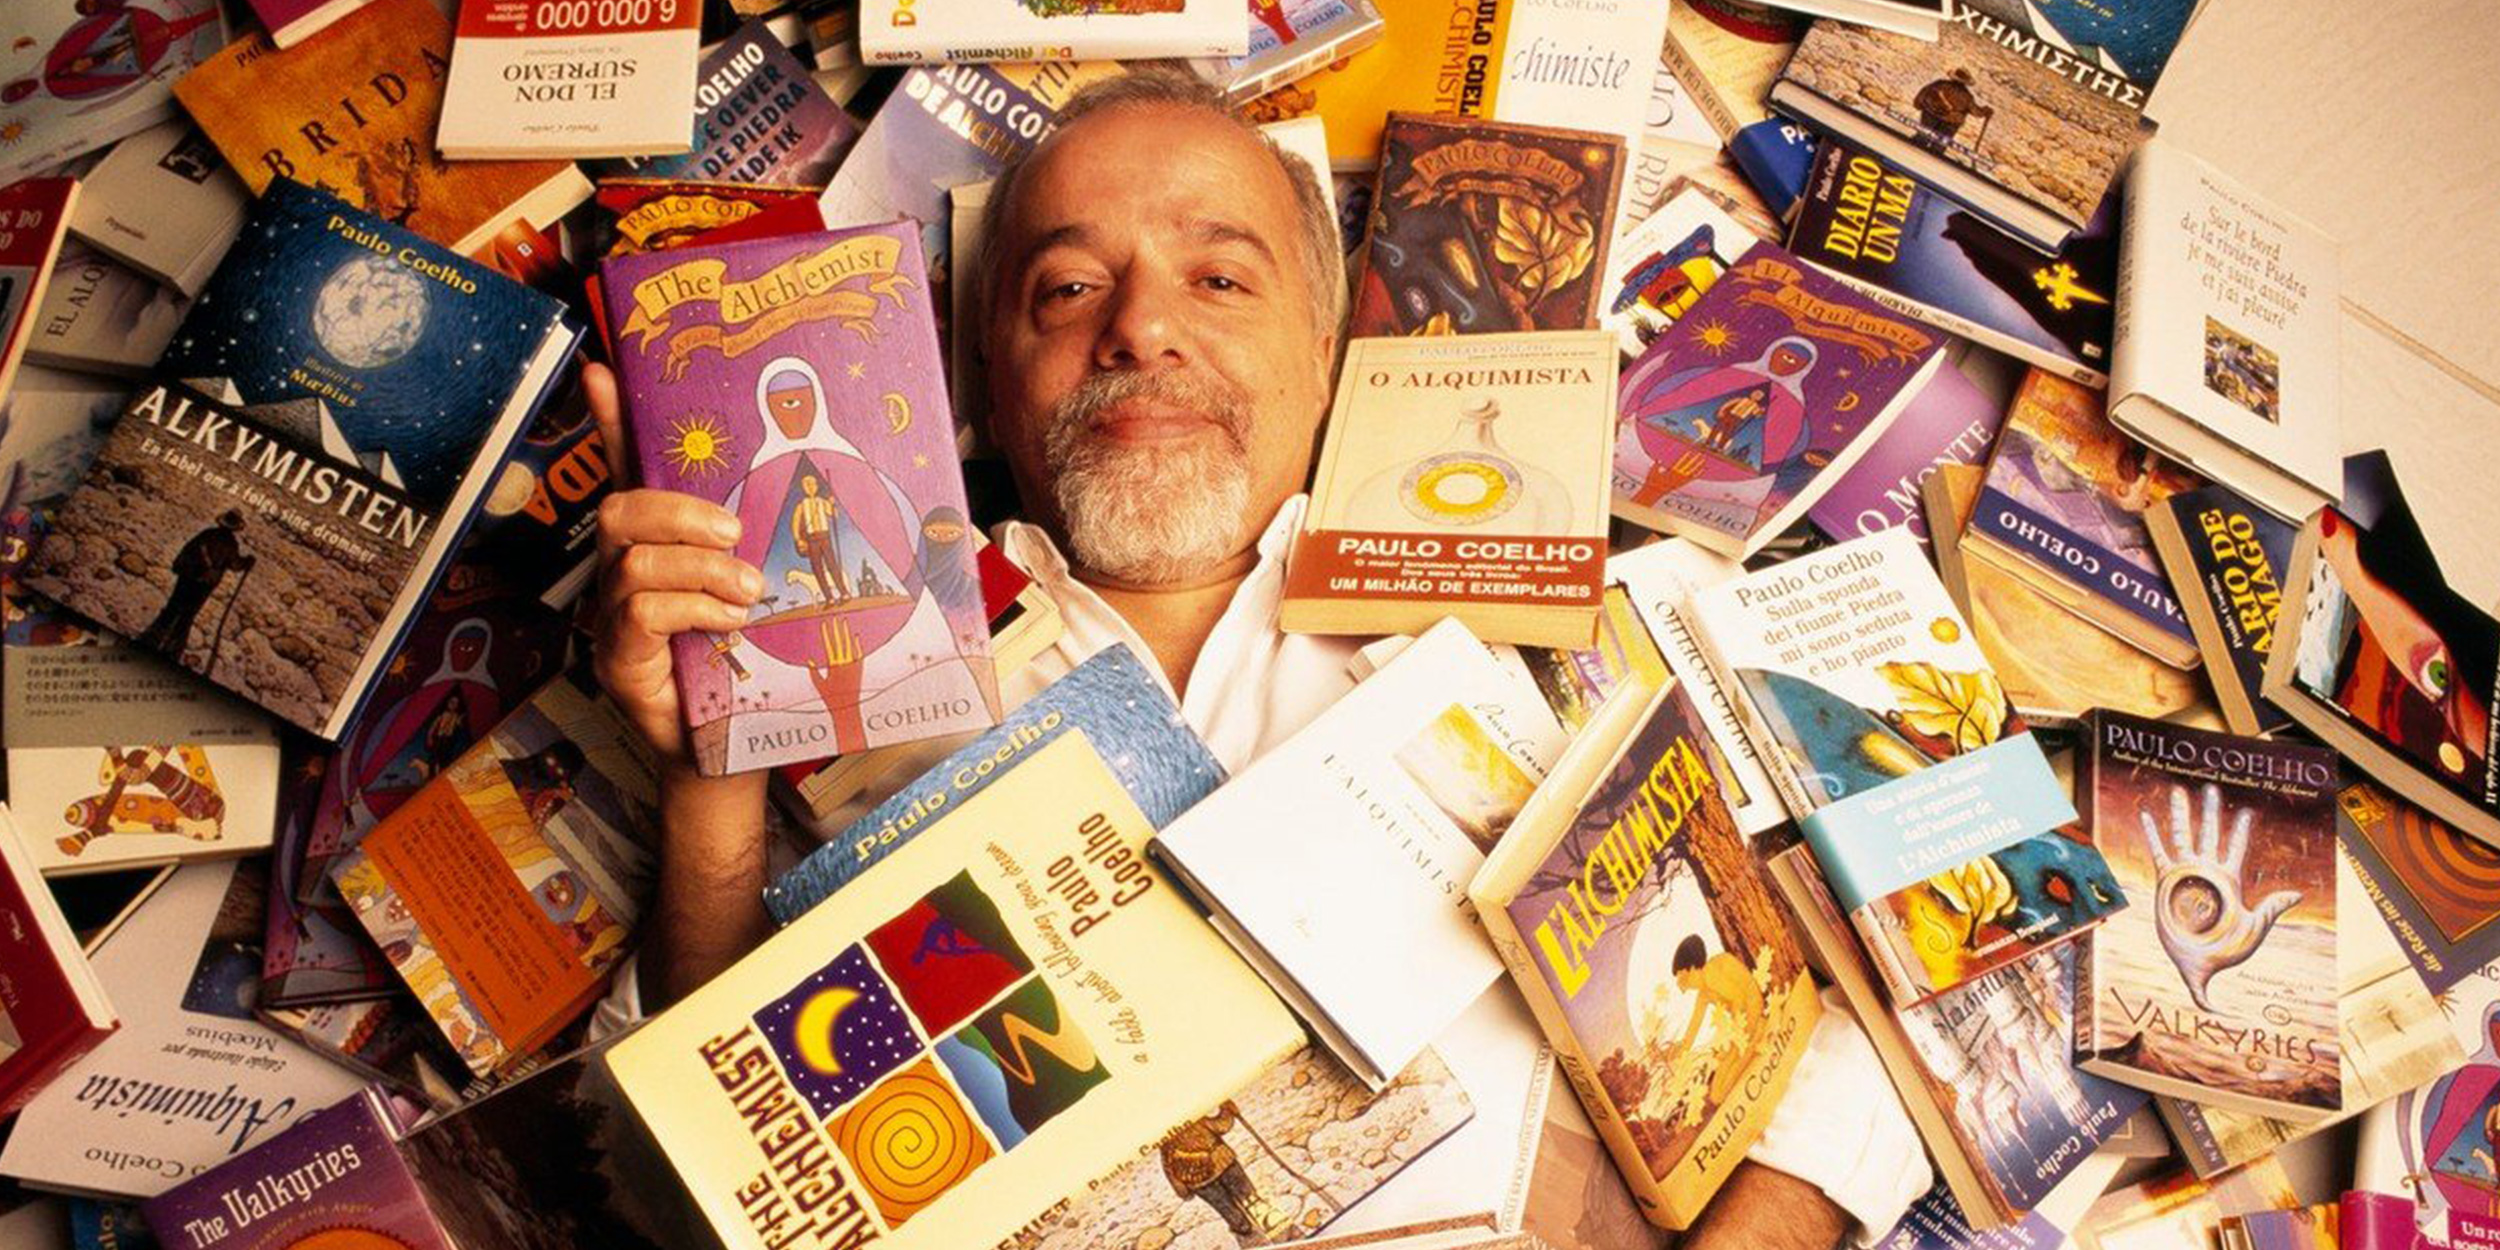 Коэльо прим. Писатель Пауло Коэльо. Паоло Коэльо книги коллаж. Бразильский писатель Пауло Коэльо книги. Книги про Бразилию.